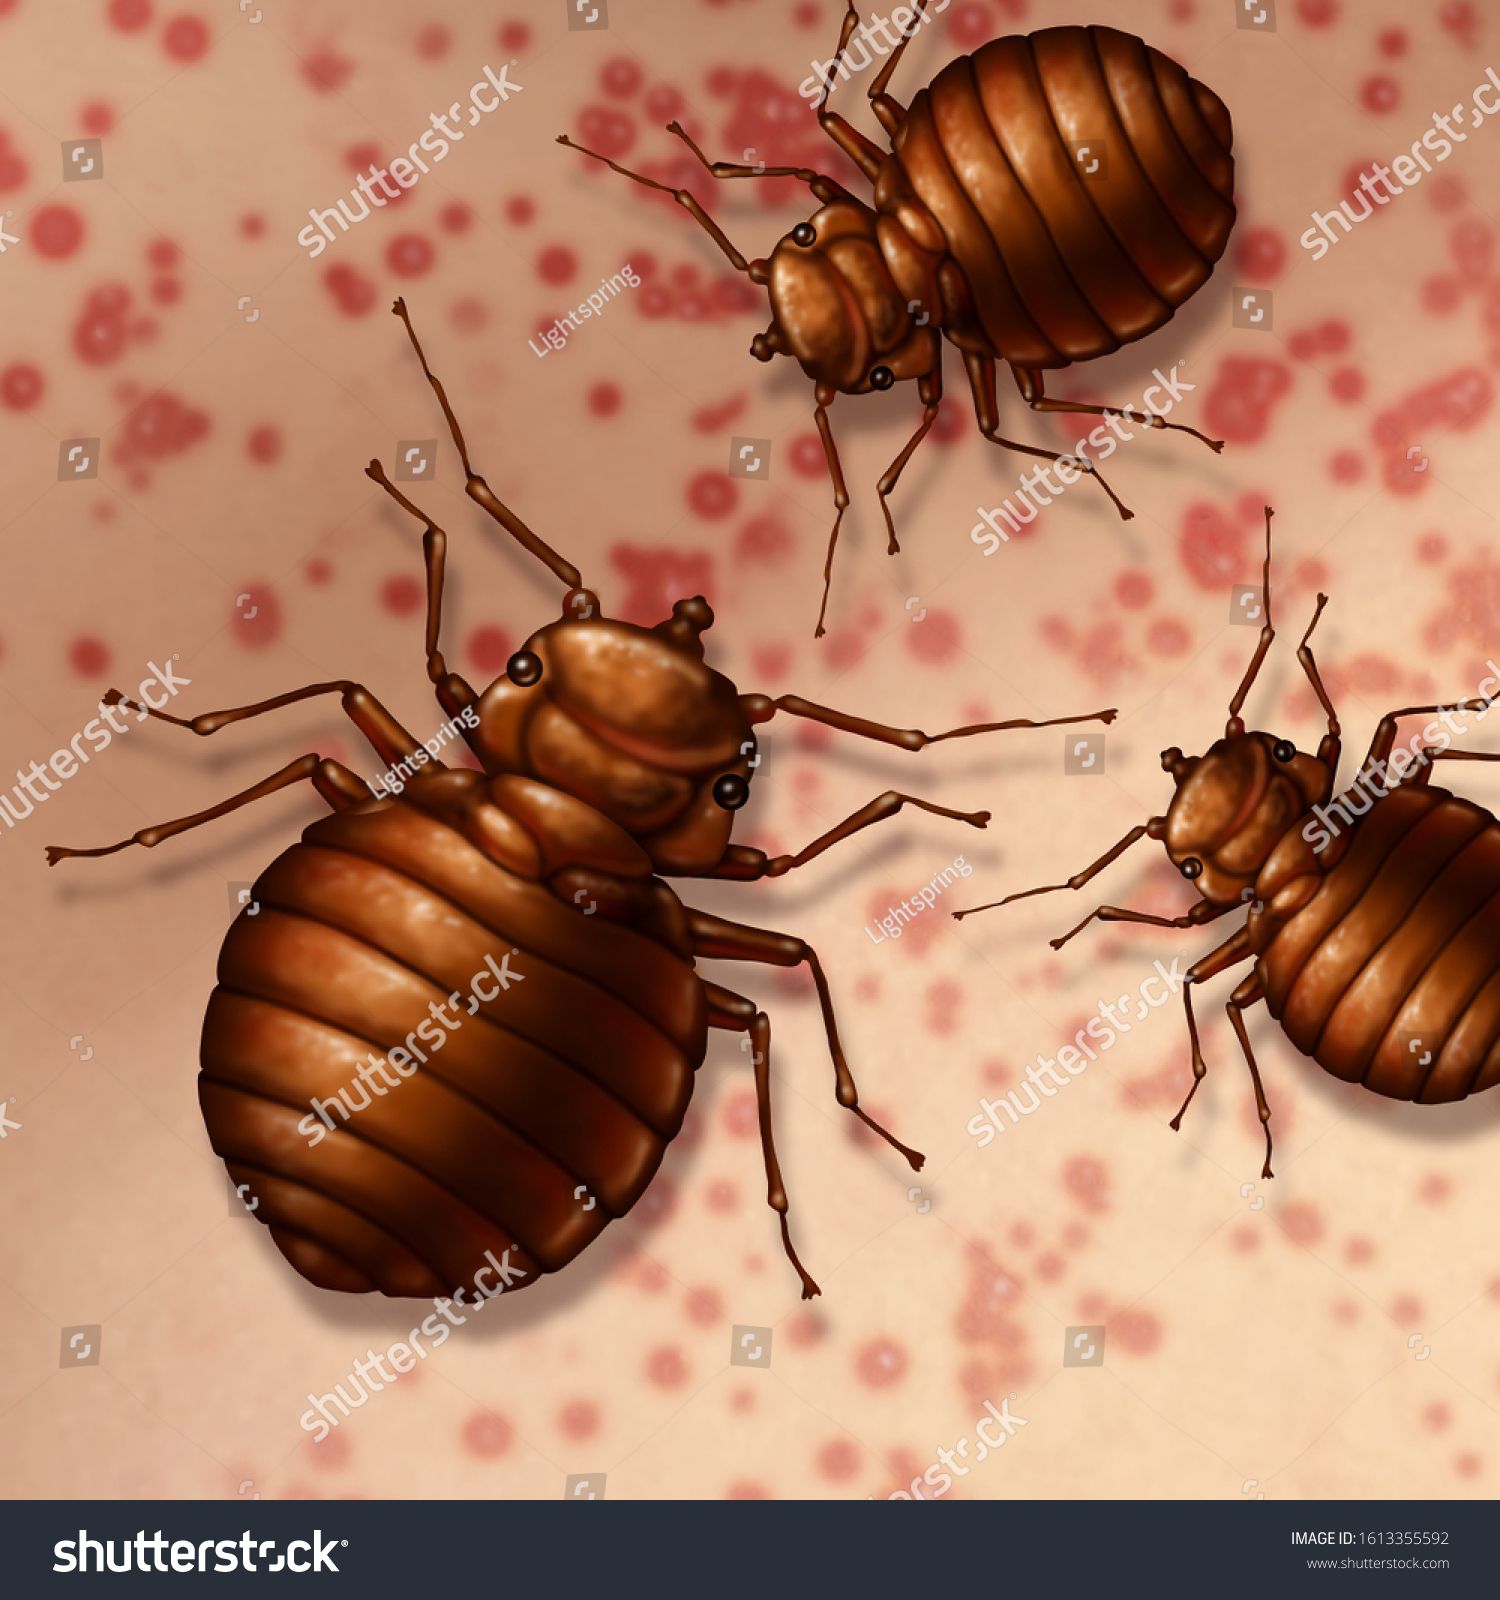 Bed Bug On Skin Bedbugs Bites Stock Illustration 1613355592 | Shutterstock